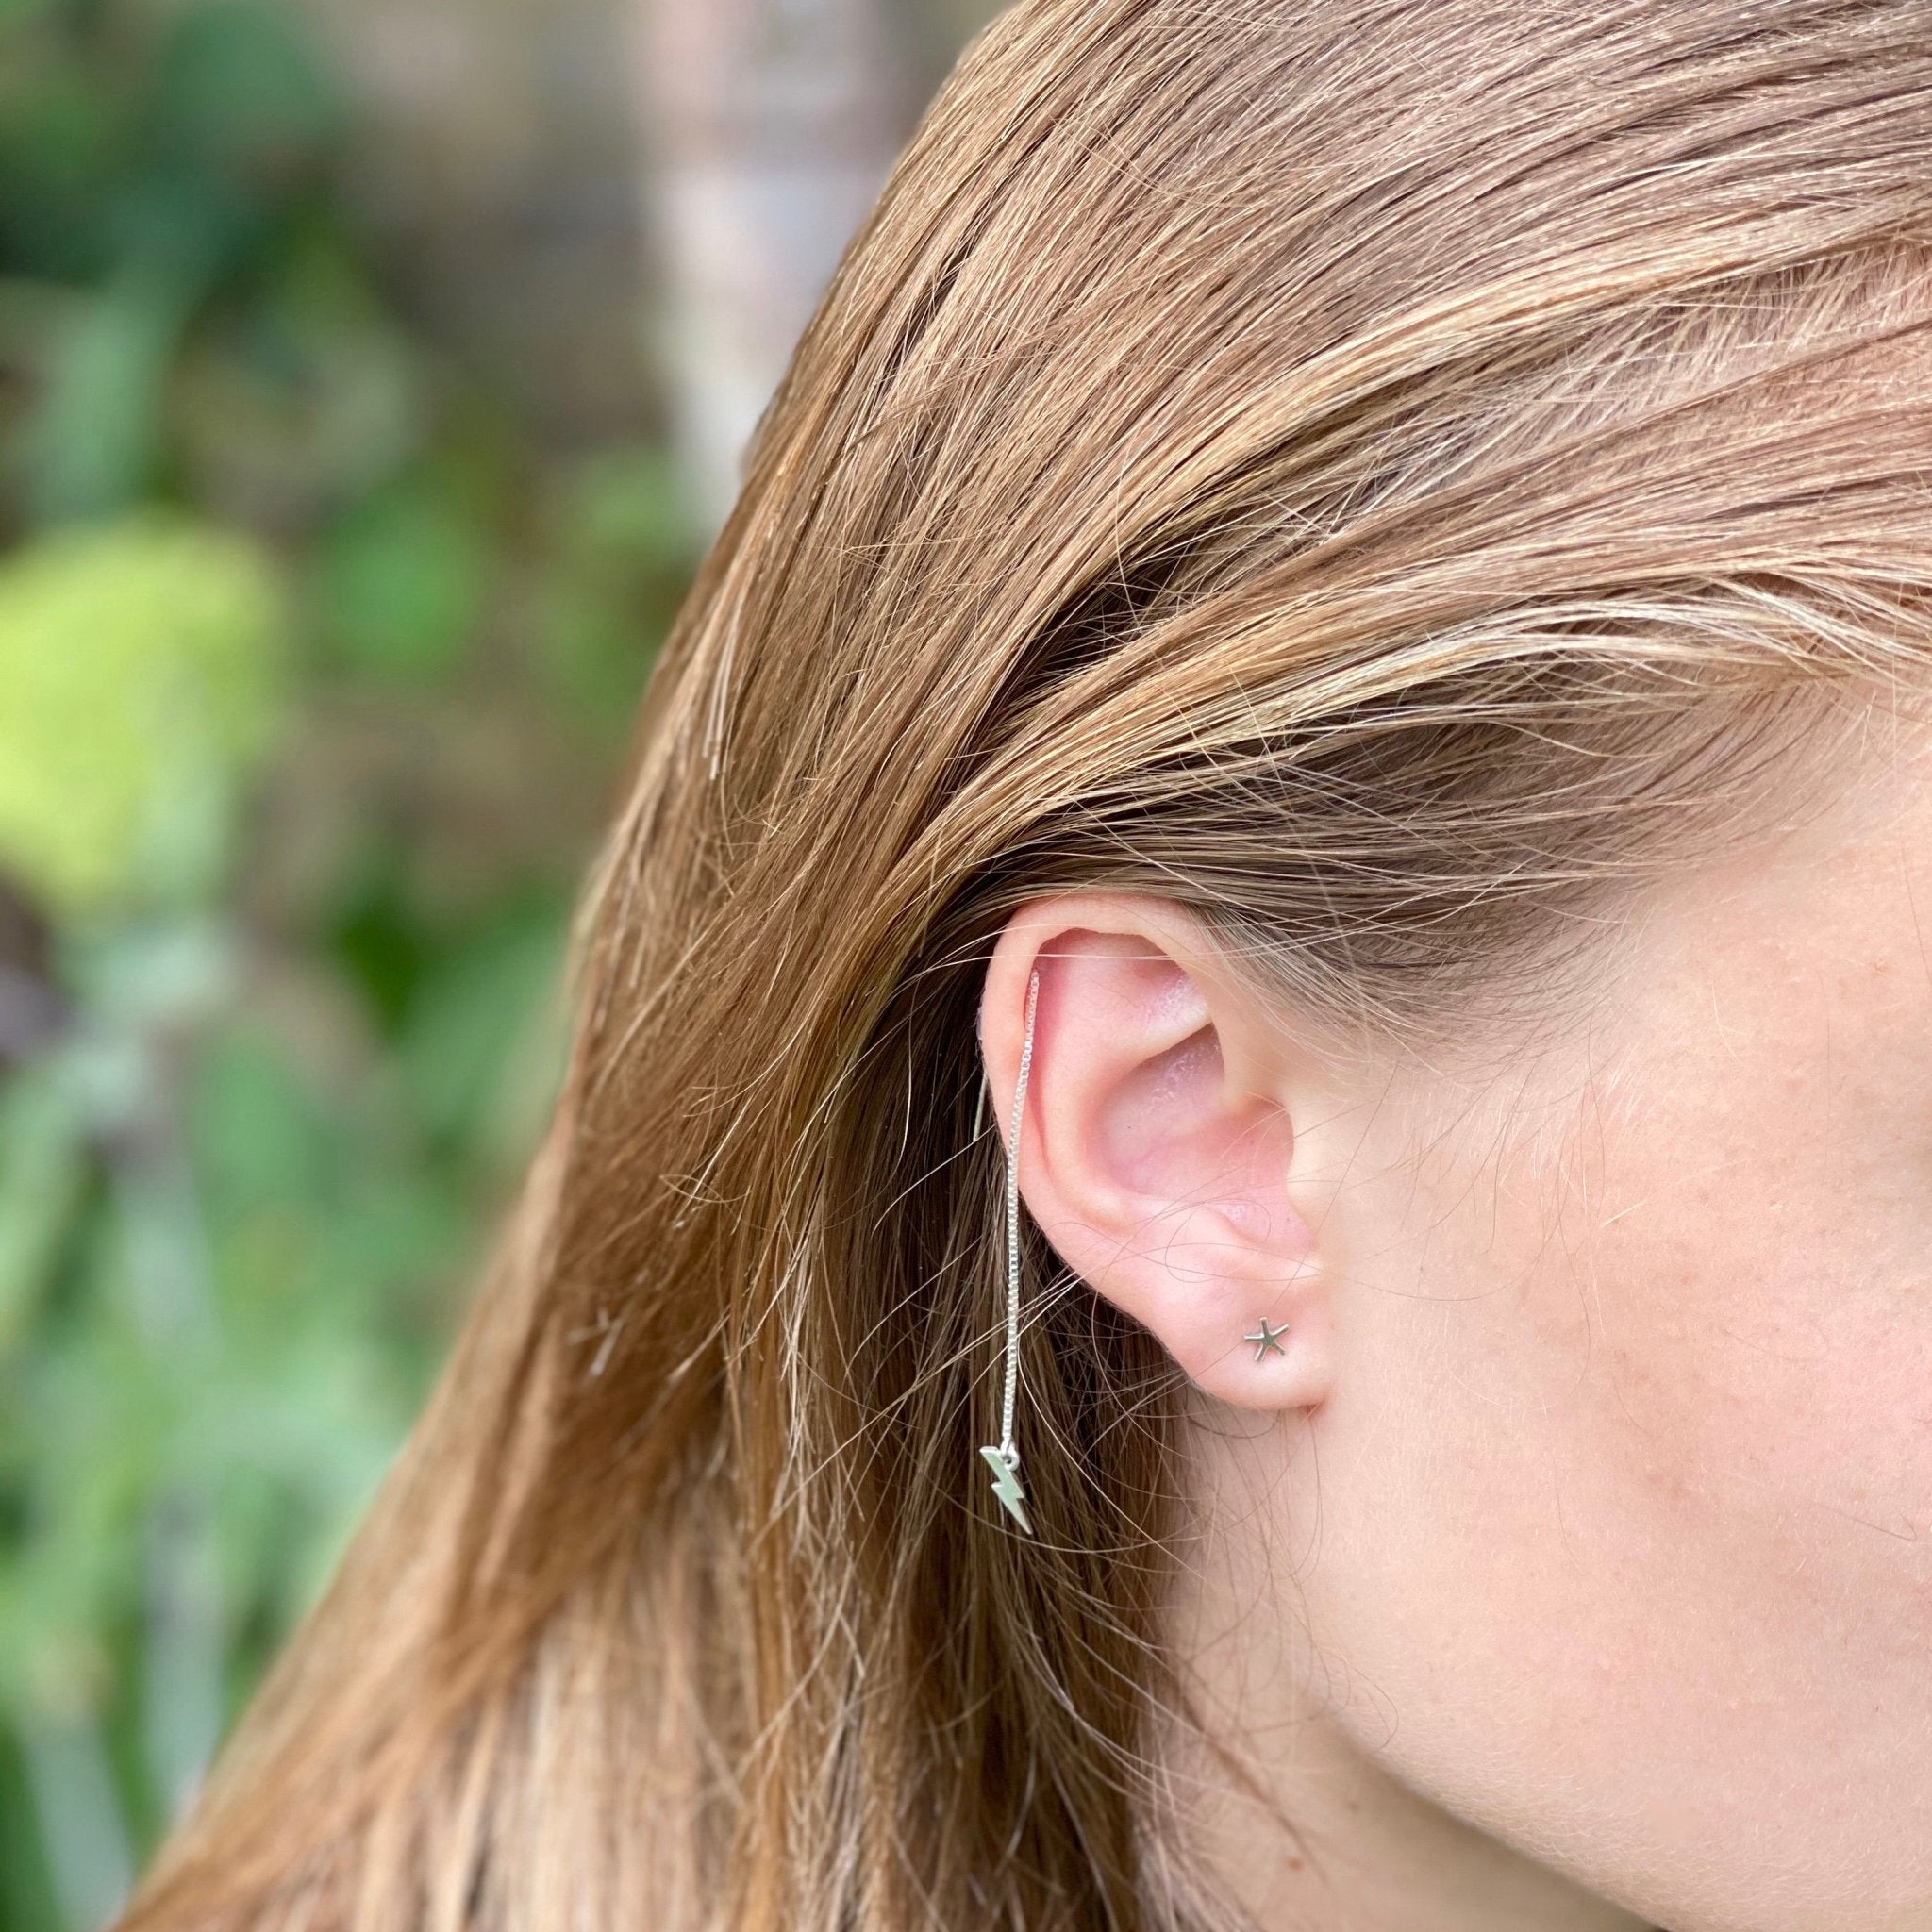 Sterlng Silver Asterisk Earrings | mazi + zo jewelry